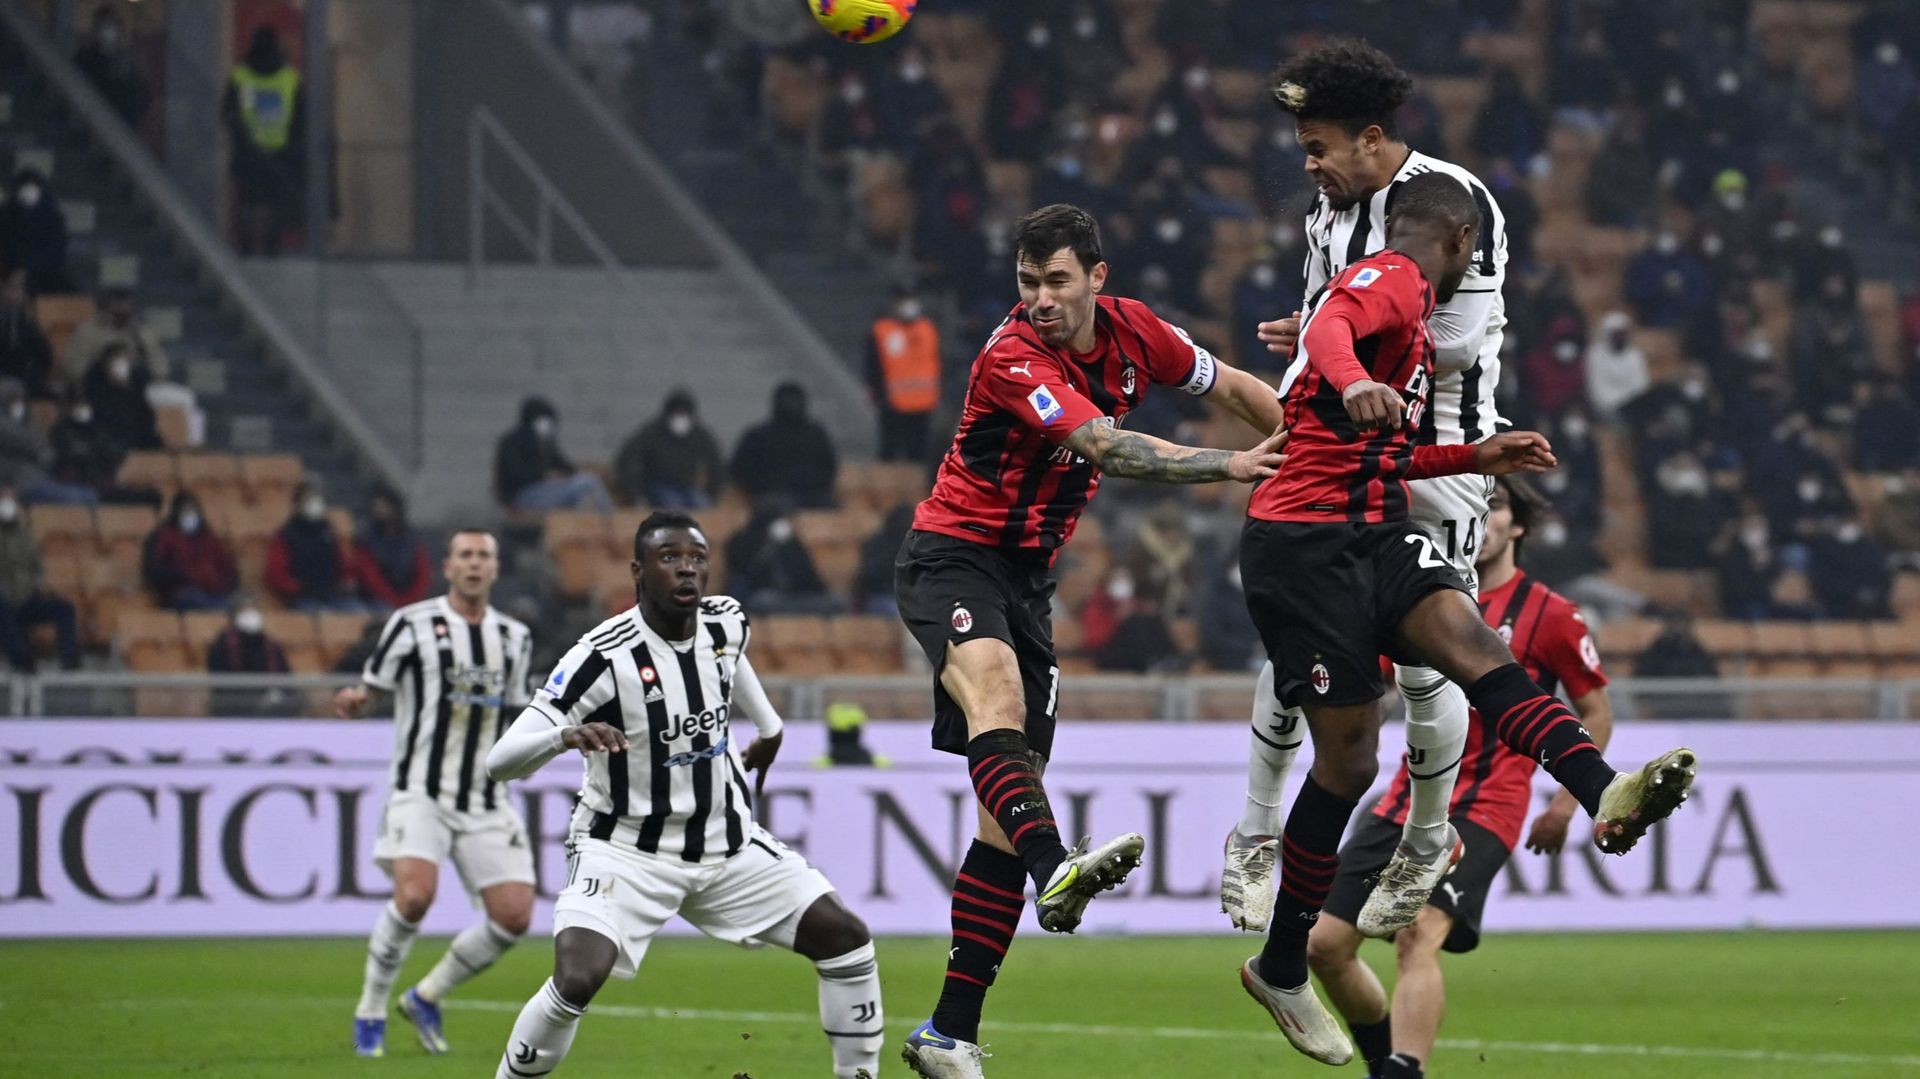 Série A : l'AC Milan et la Juventus font du surplace, Saelemaekers joue la dernière demi-heure